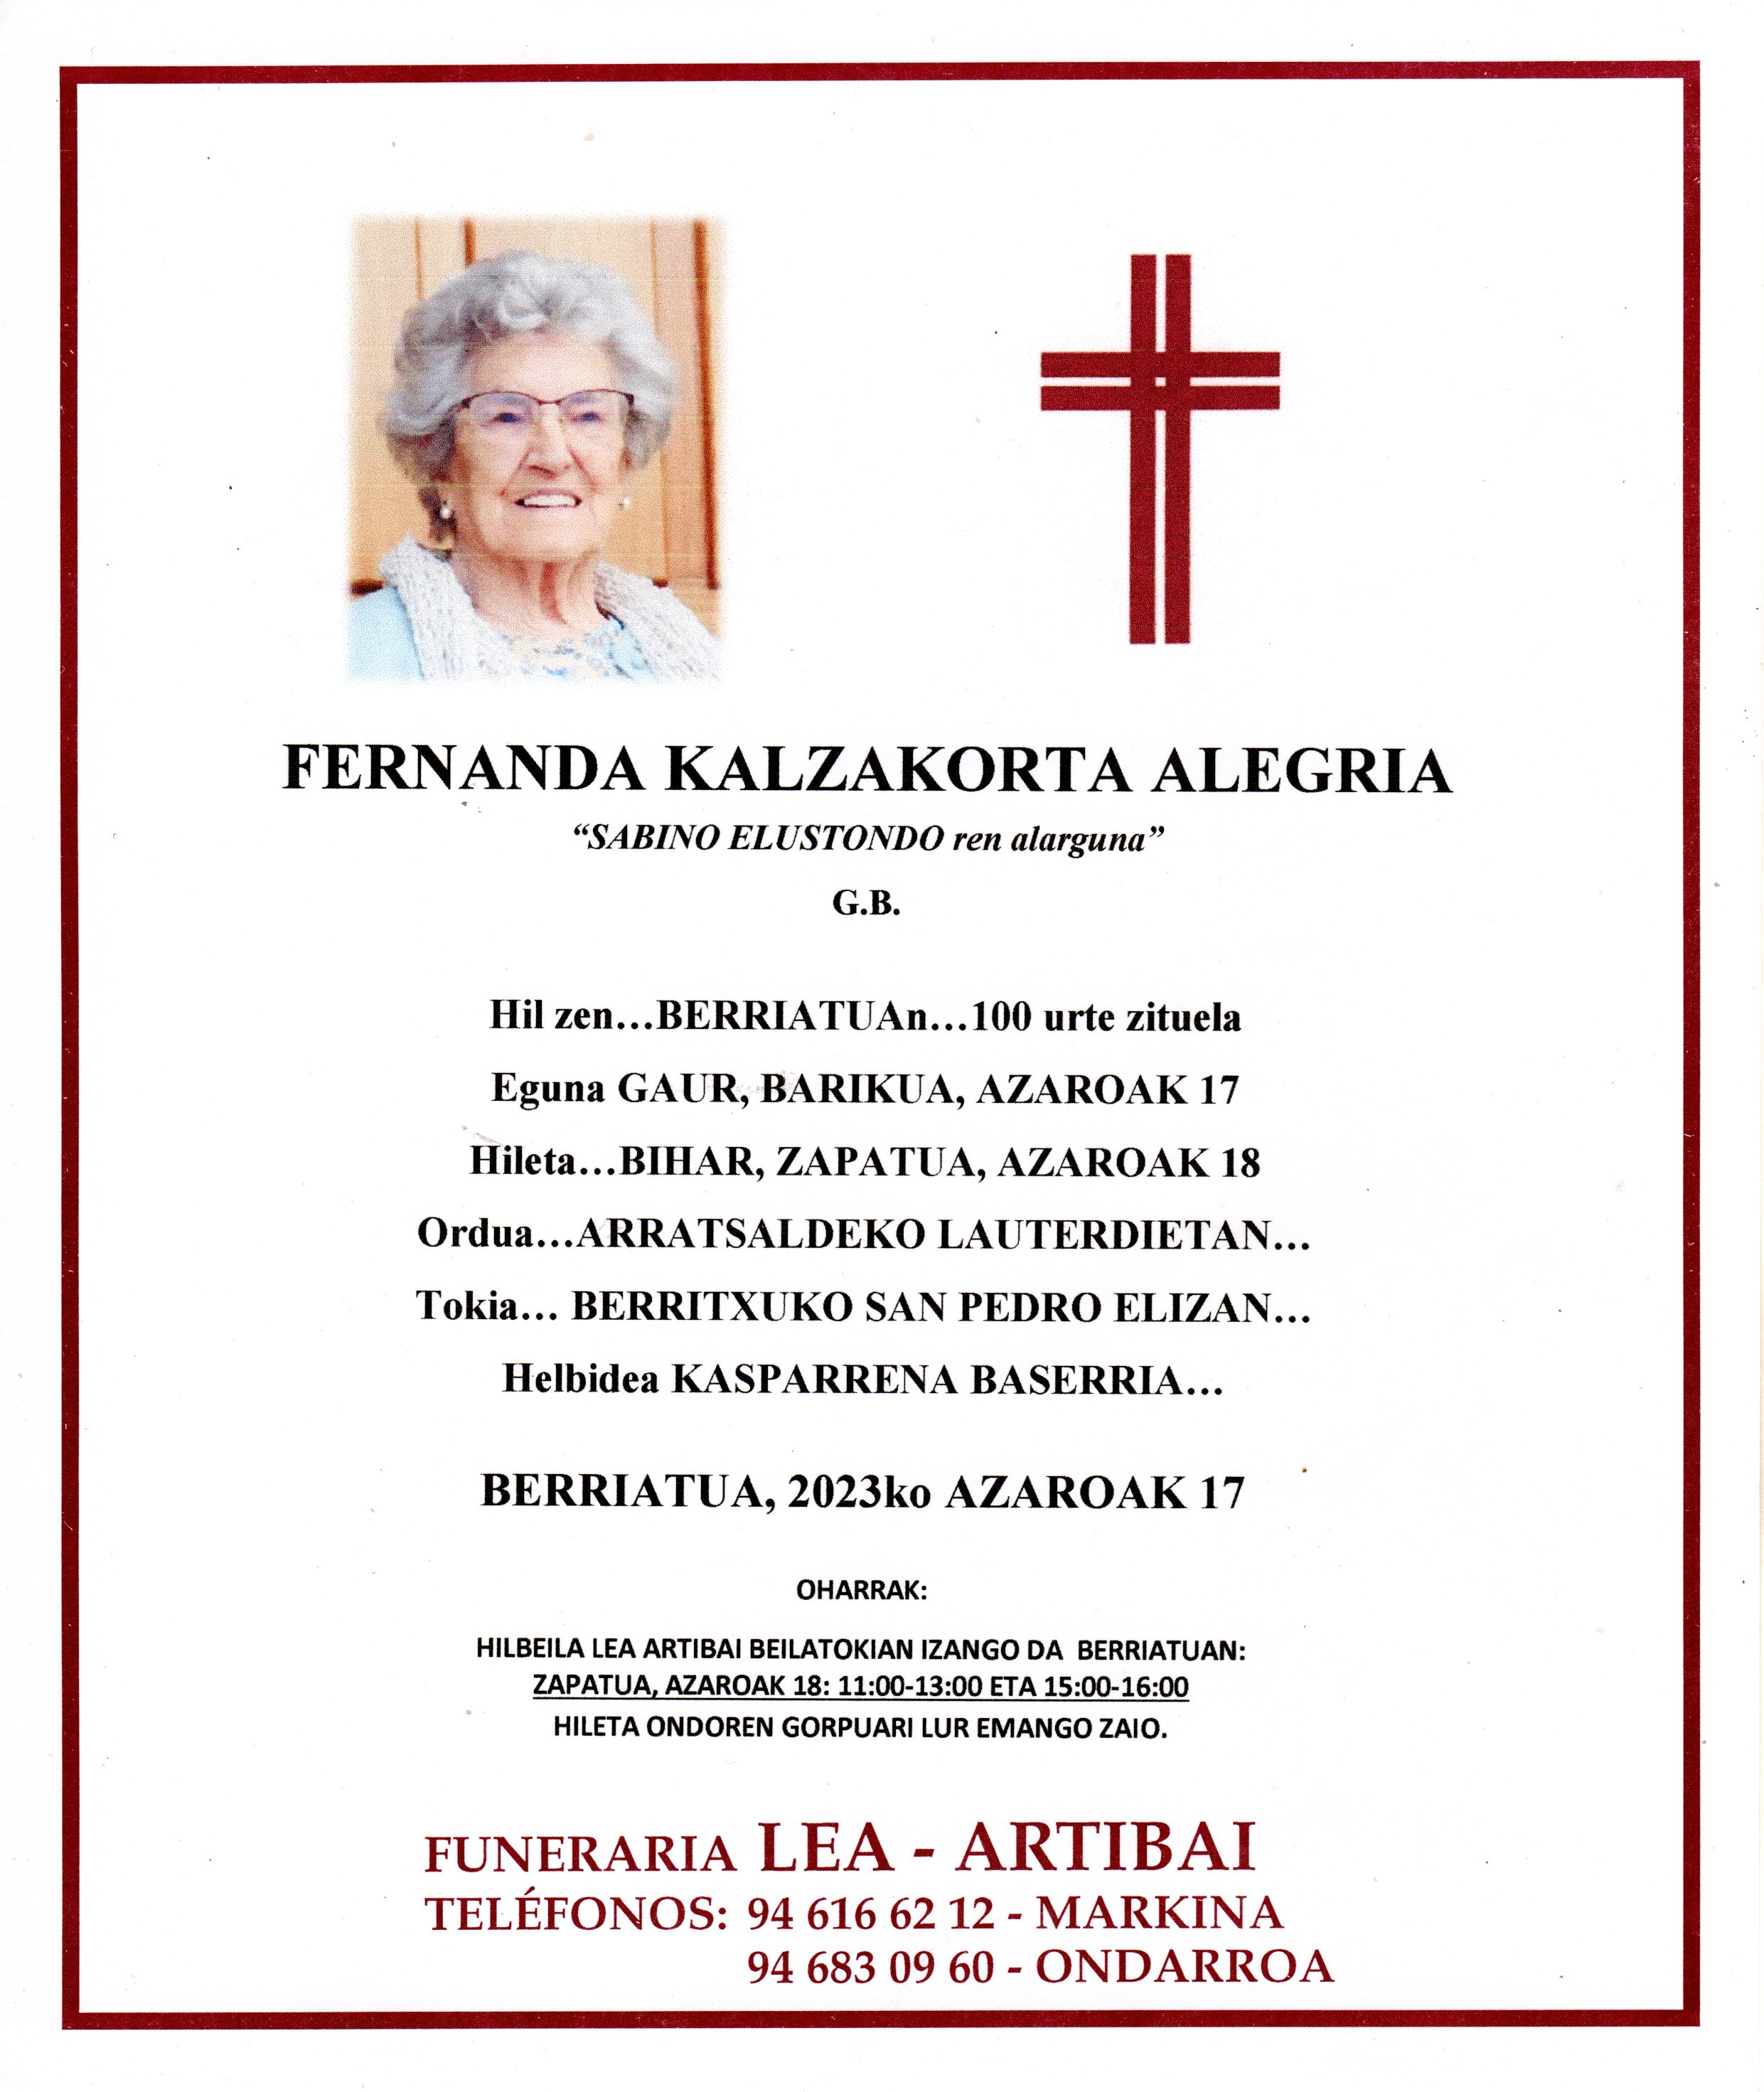 Fernanda Kalzakorta Alegria